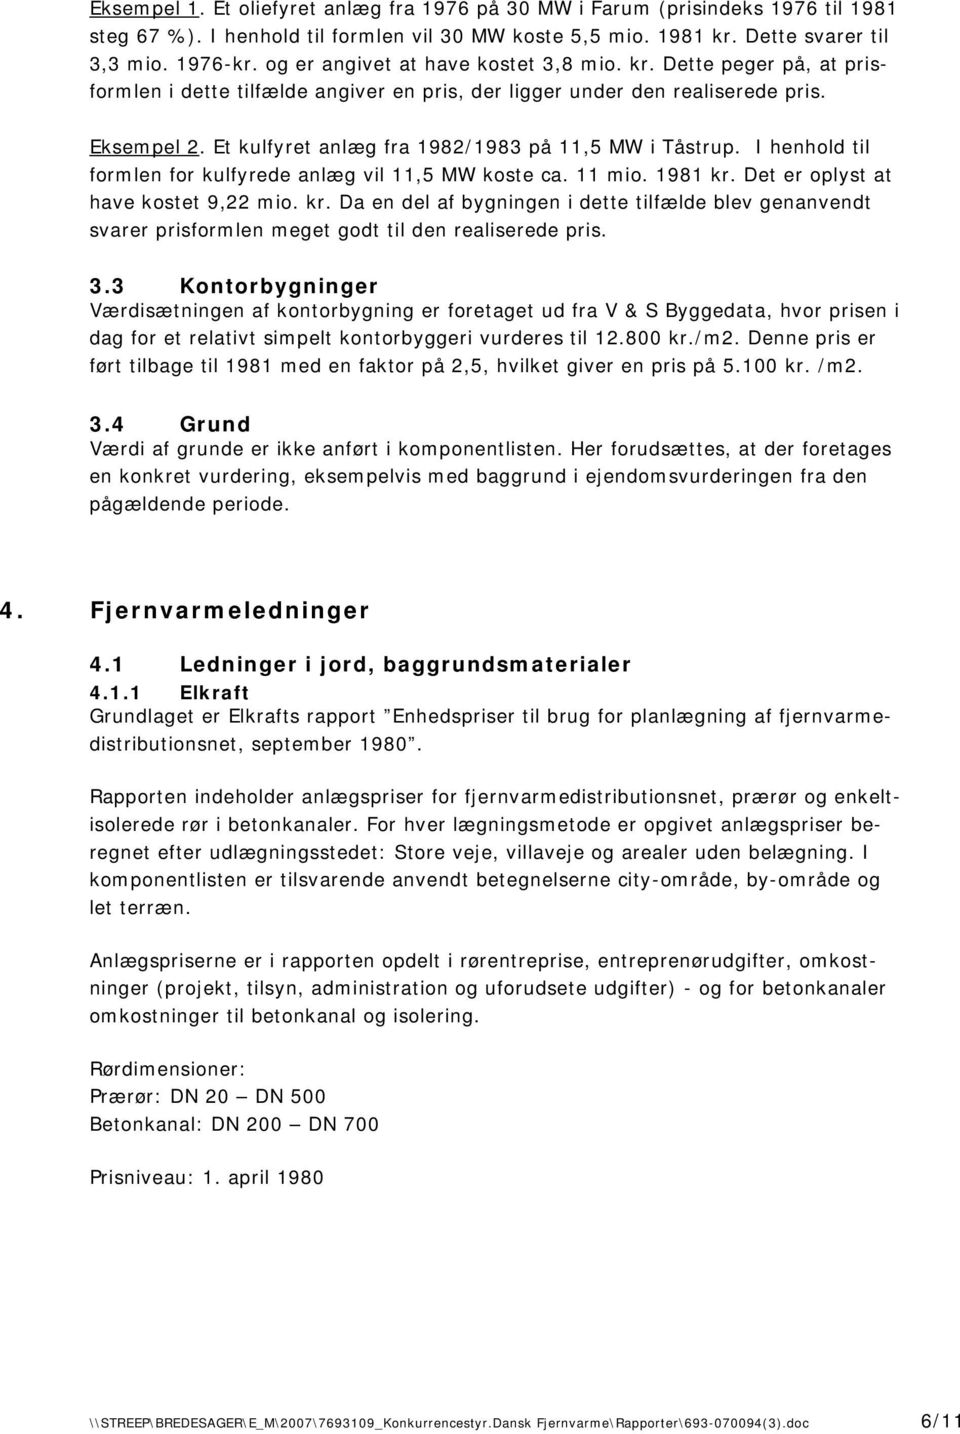 Et kulfyret anlæg fra 1982/1983 på 11,5 MW i Tåstrup. I henhold til formlen for kulfyrede anlæg vil 11,5 MW koste ca. 11 mio. 1981 kr.